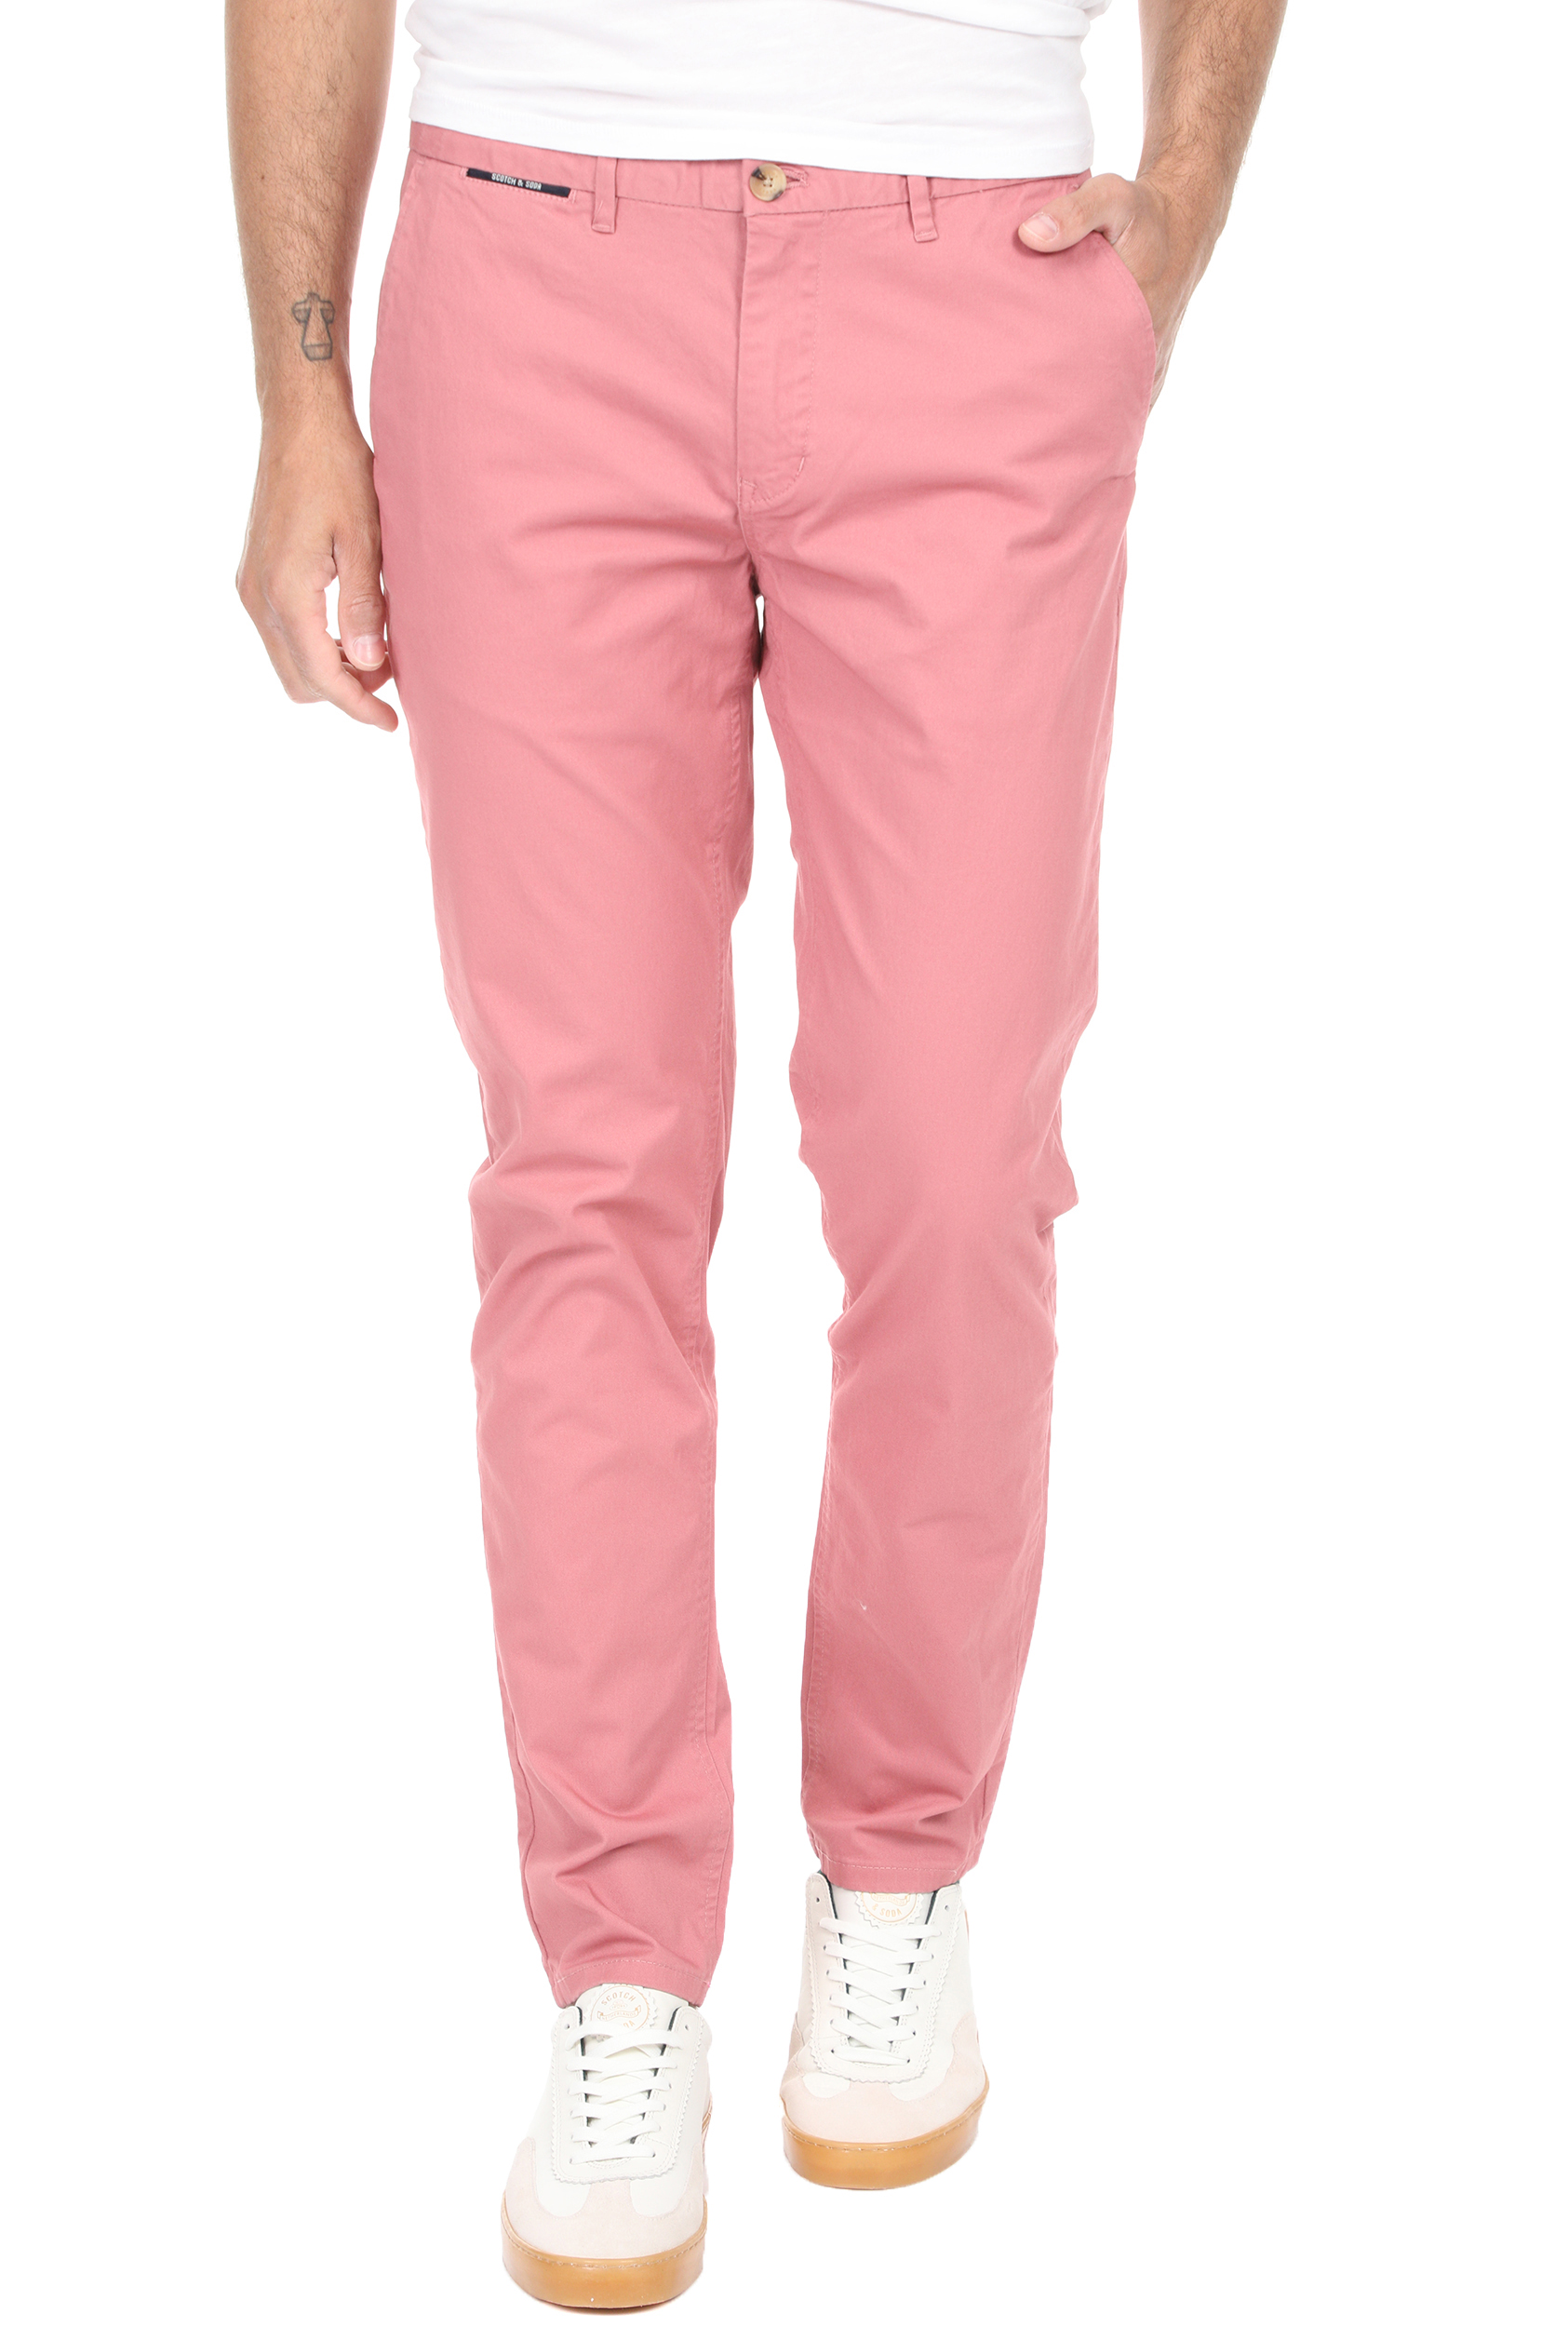 Ανδρικά/Ρούχα/Παντελόνια/Chinos SCOTCH & SODA - Ανδρικό chino παντελόνι SCOTCH & SODA MOTT ροζ